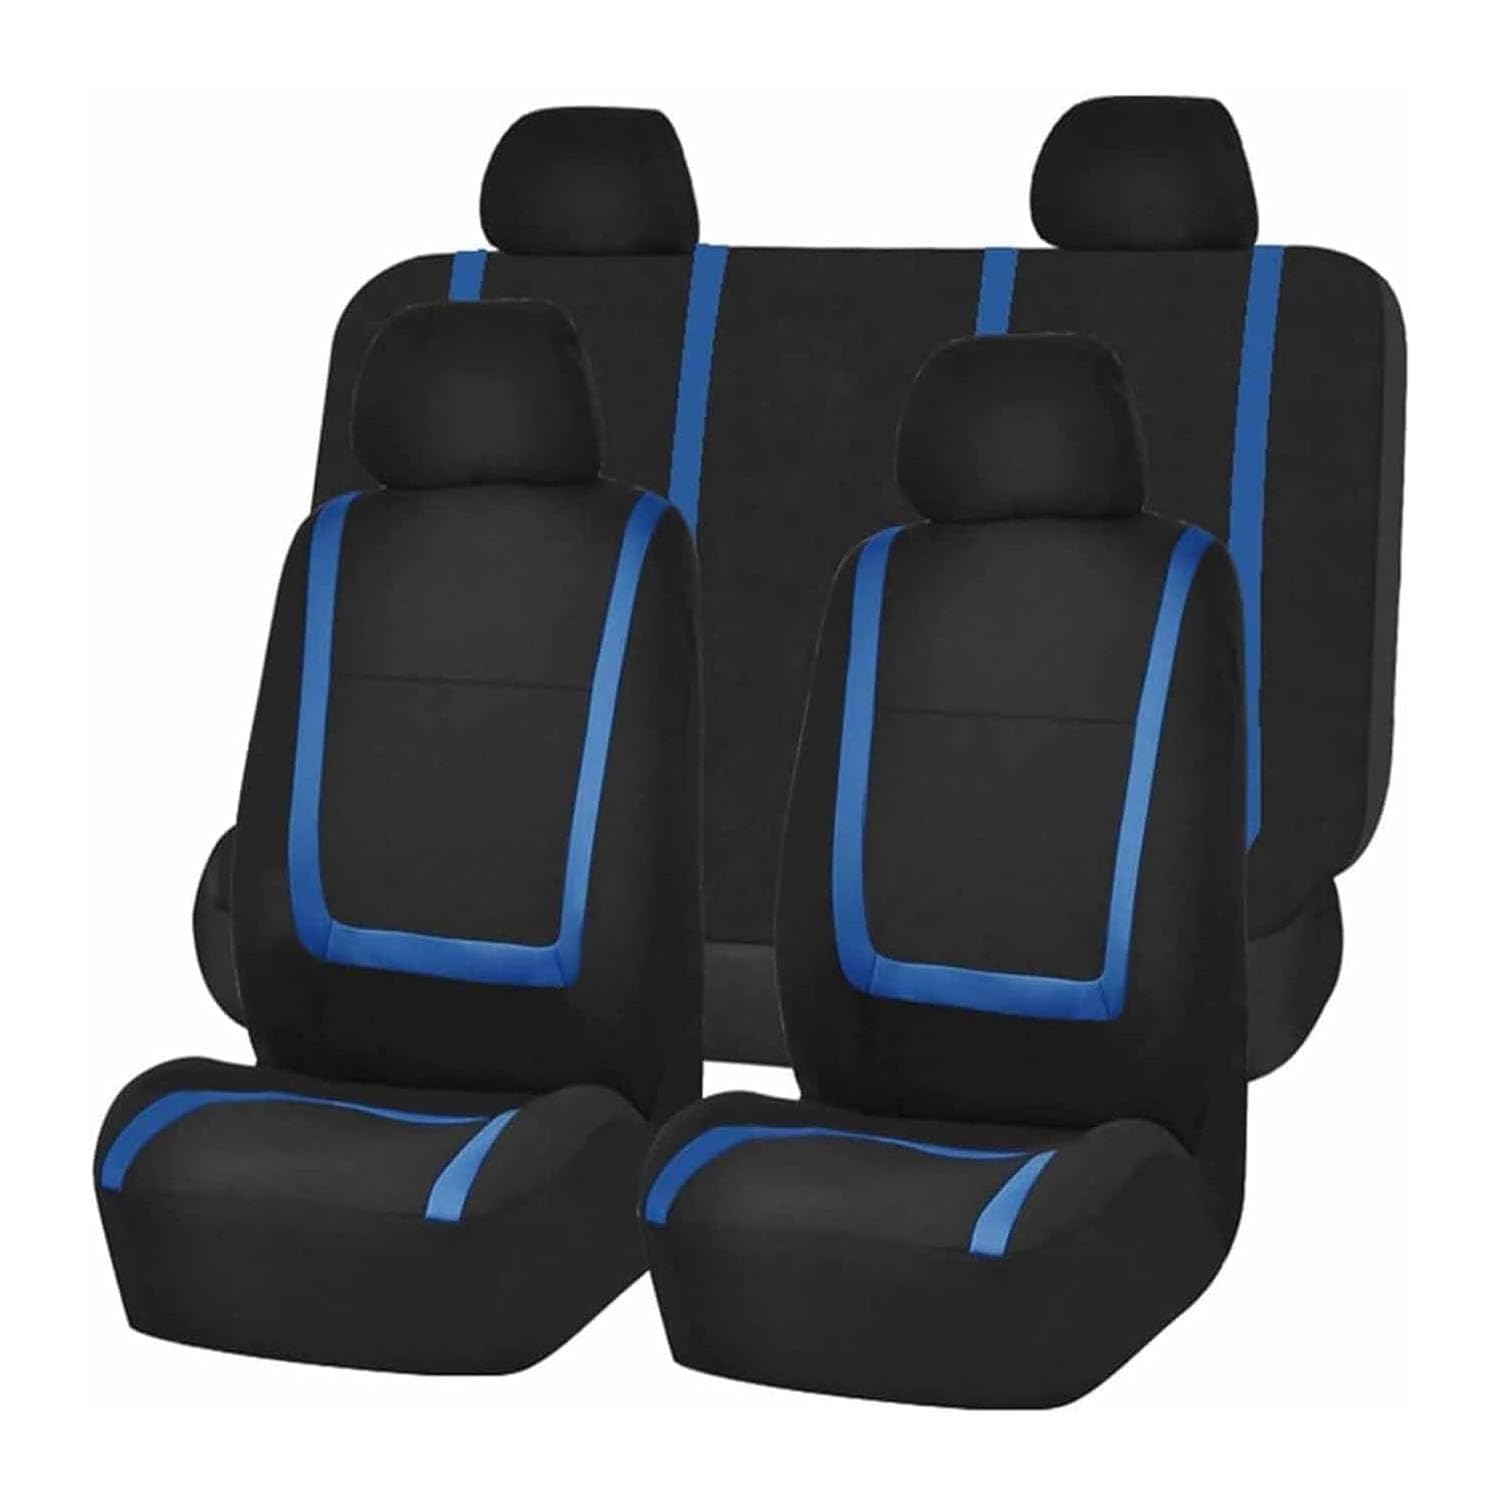 VewZJJ Auto Sitzbezügesets für Mitsubishi Eclipse Cross GK,Komfortabler Atmungsaktiv Sitzschoner Satz Sitzbezug,rutschfest Wasserdichter Vorne RüCkbank Autositz SitzbezüGe,Black-Blue von VewZJJ